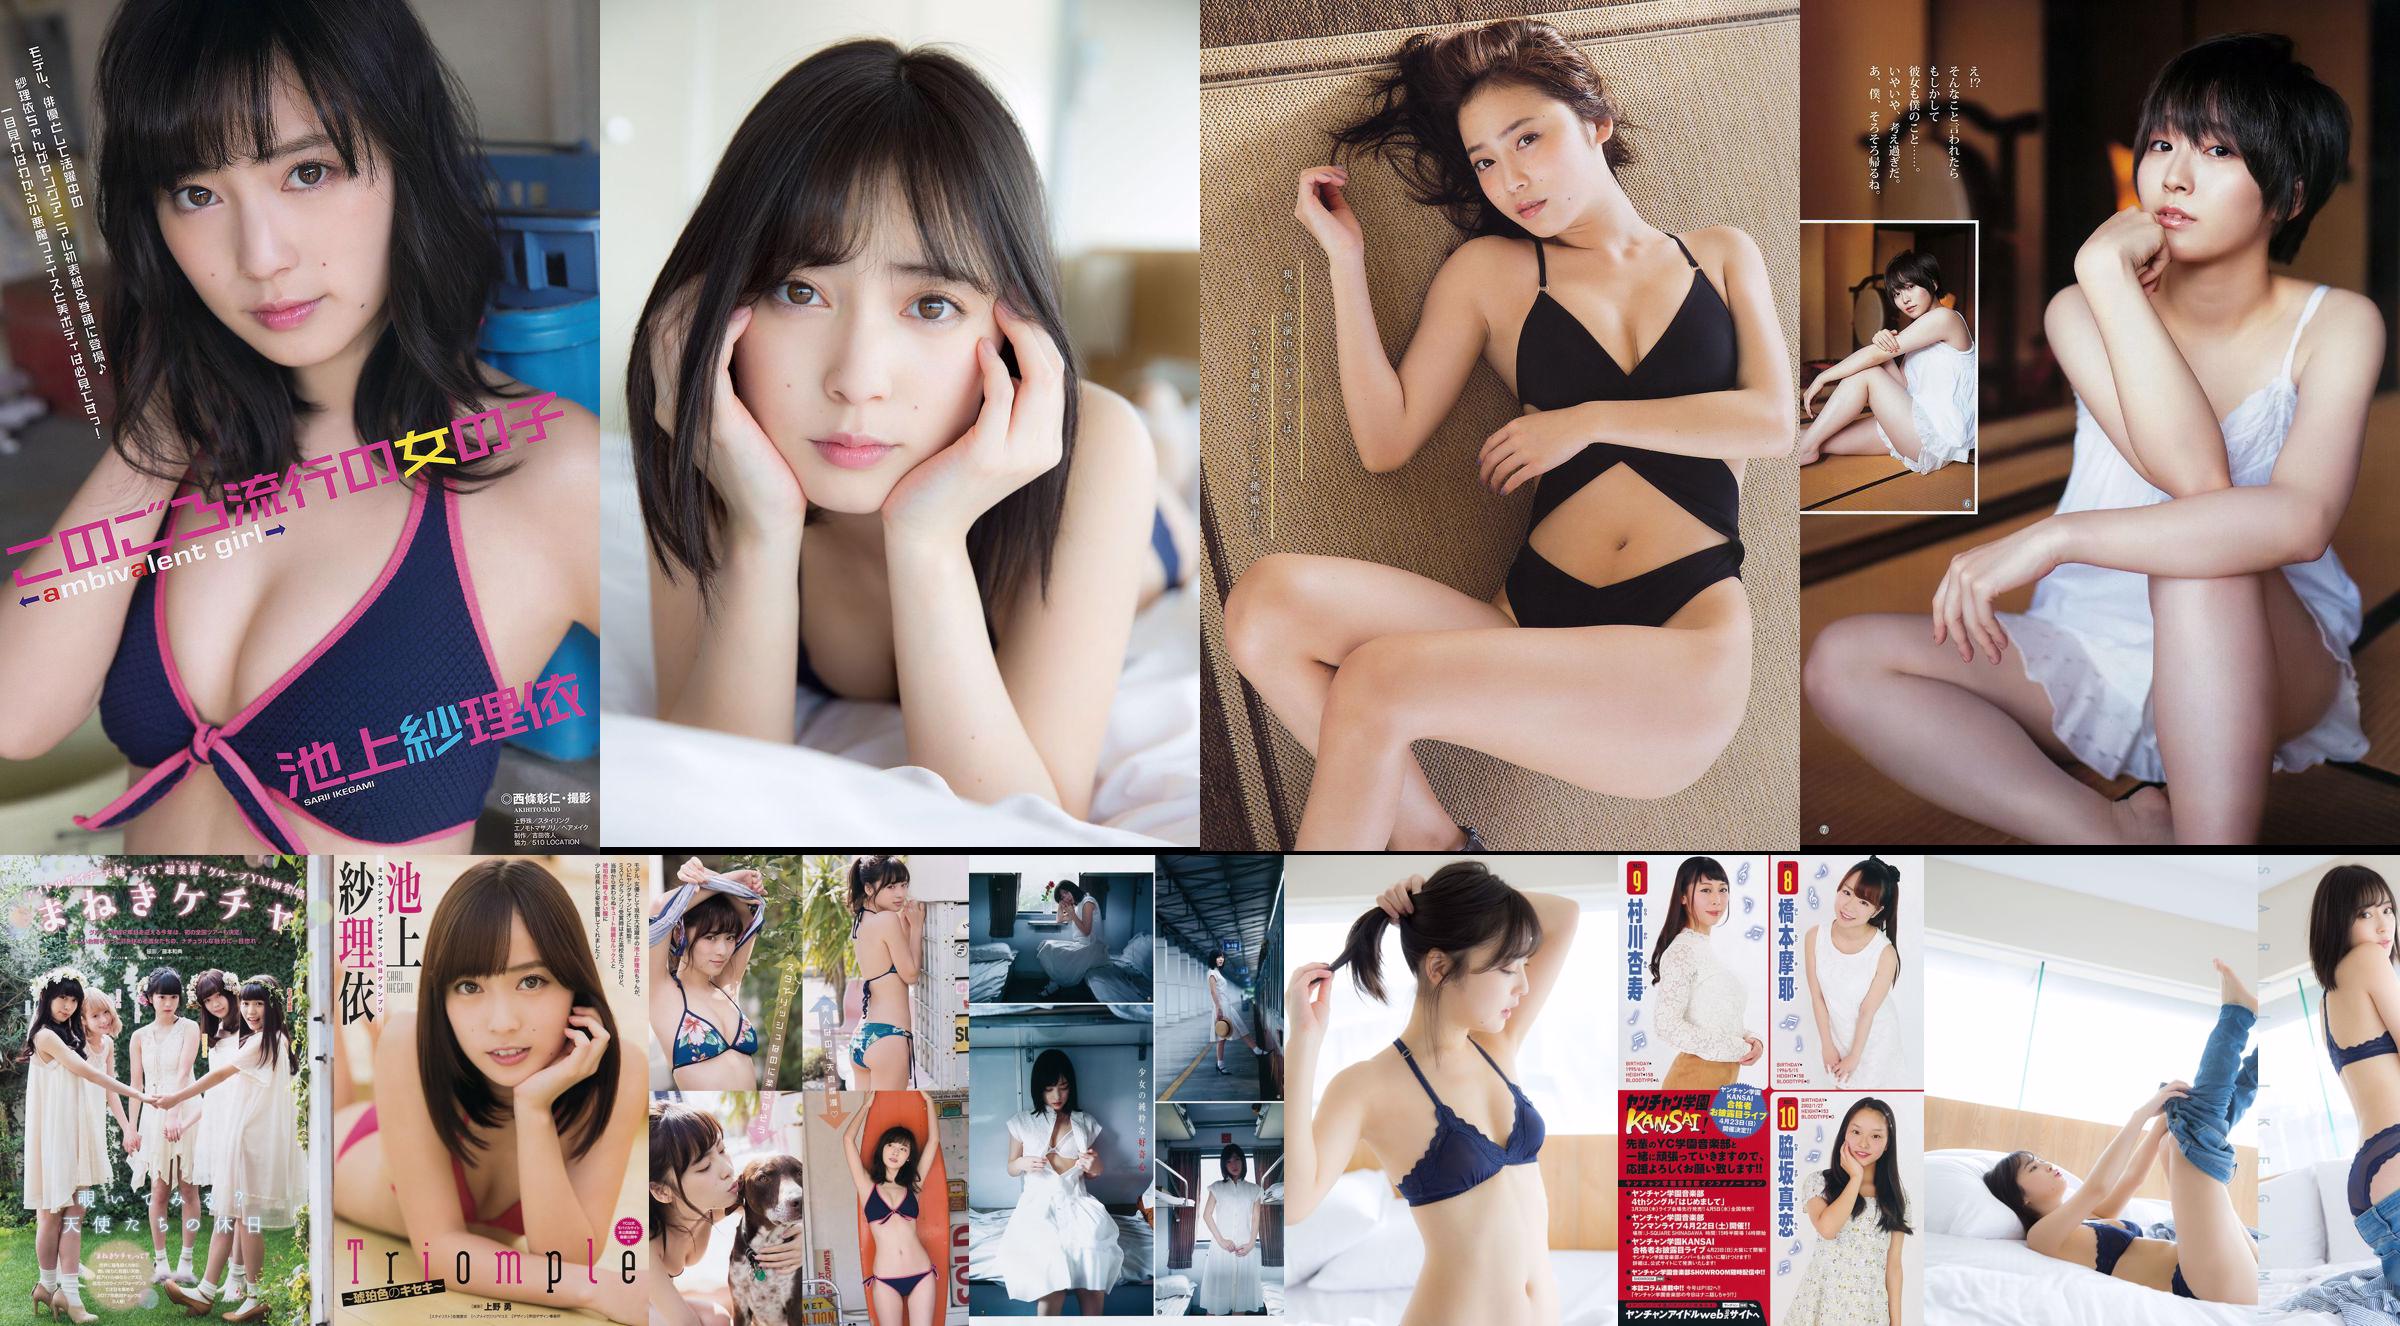 Ikegami Sarii Kitahara Ripei [Lompat Muda Mingguan] Majalah Foto No.19 2018 No.002f3b Halaman 1